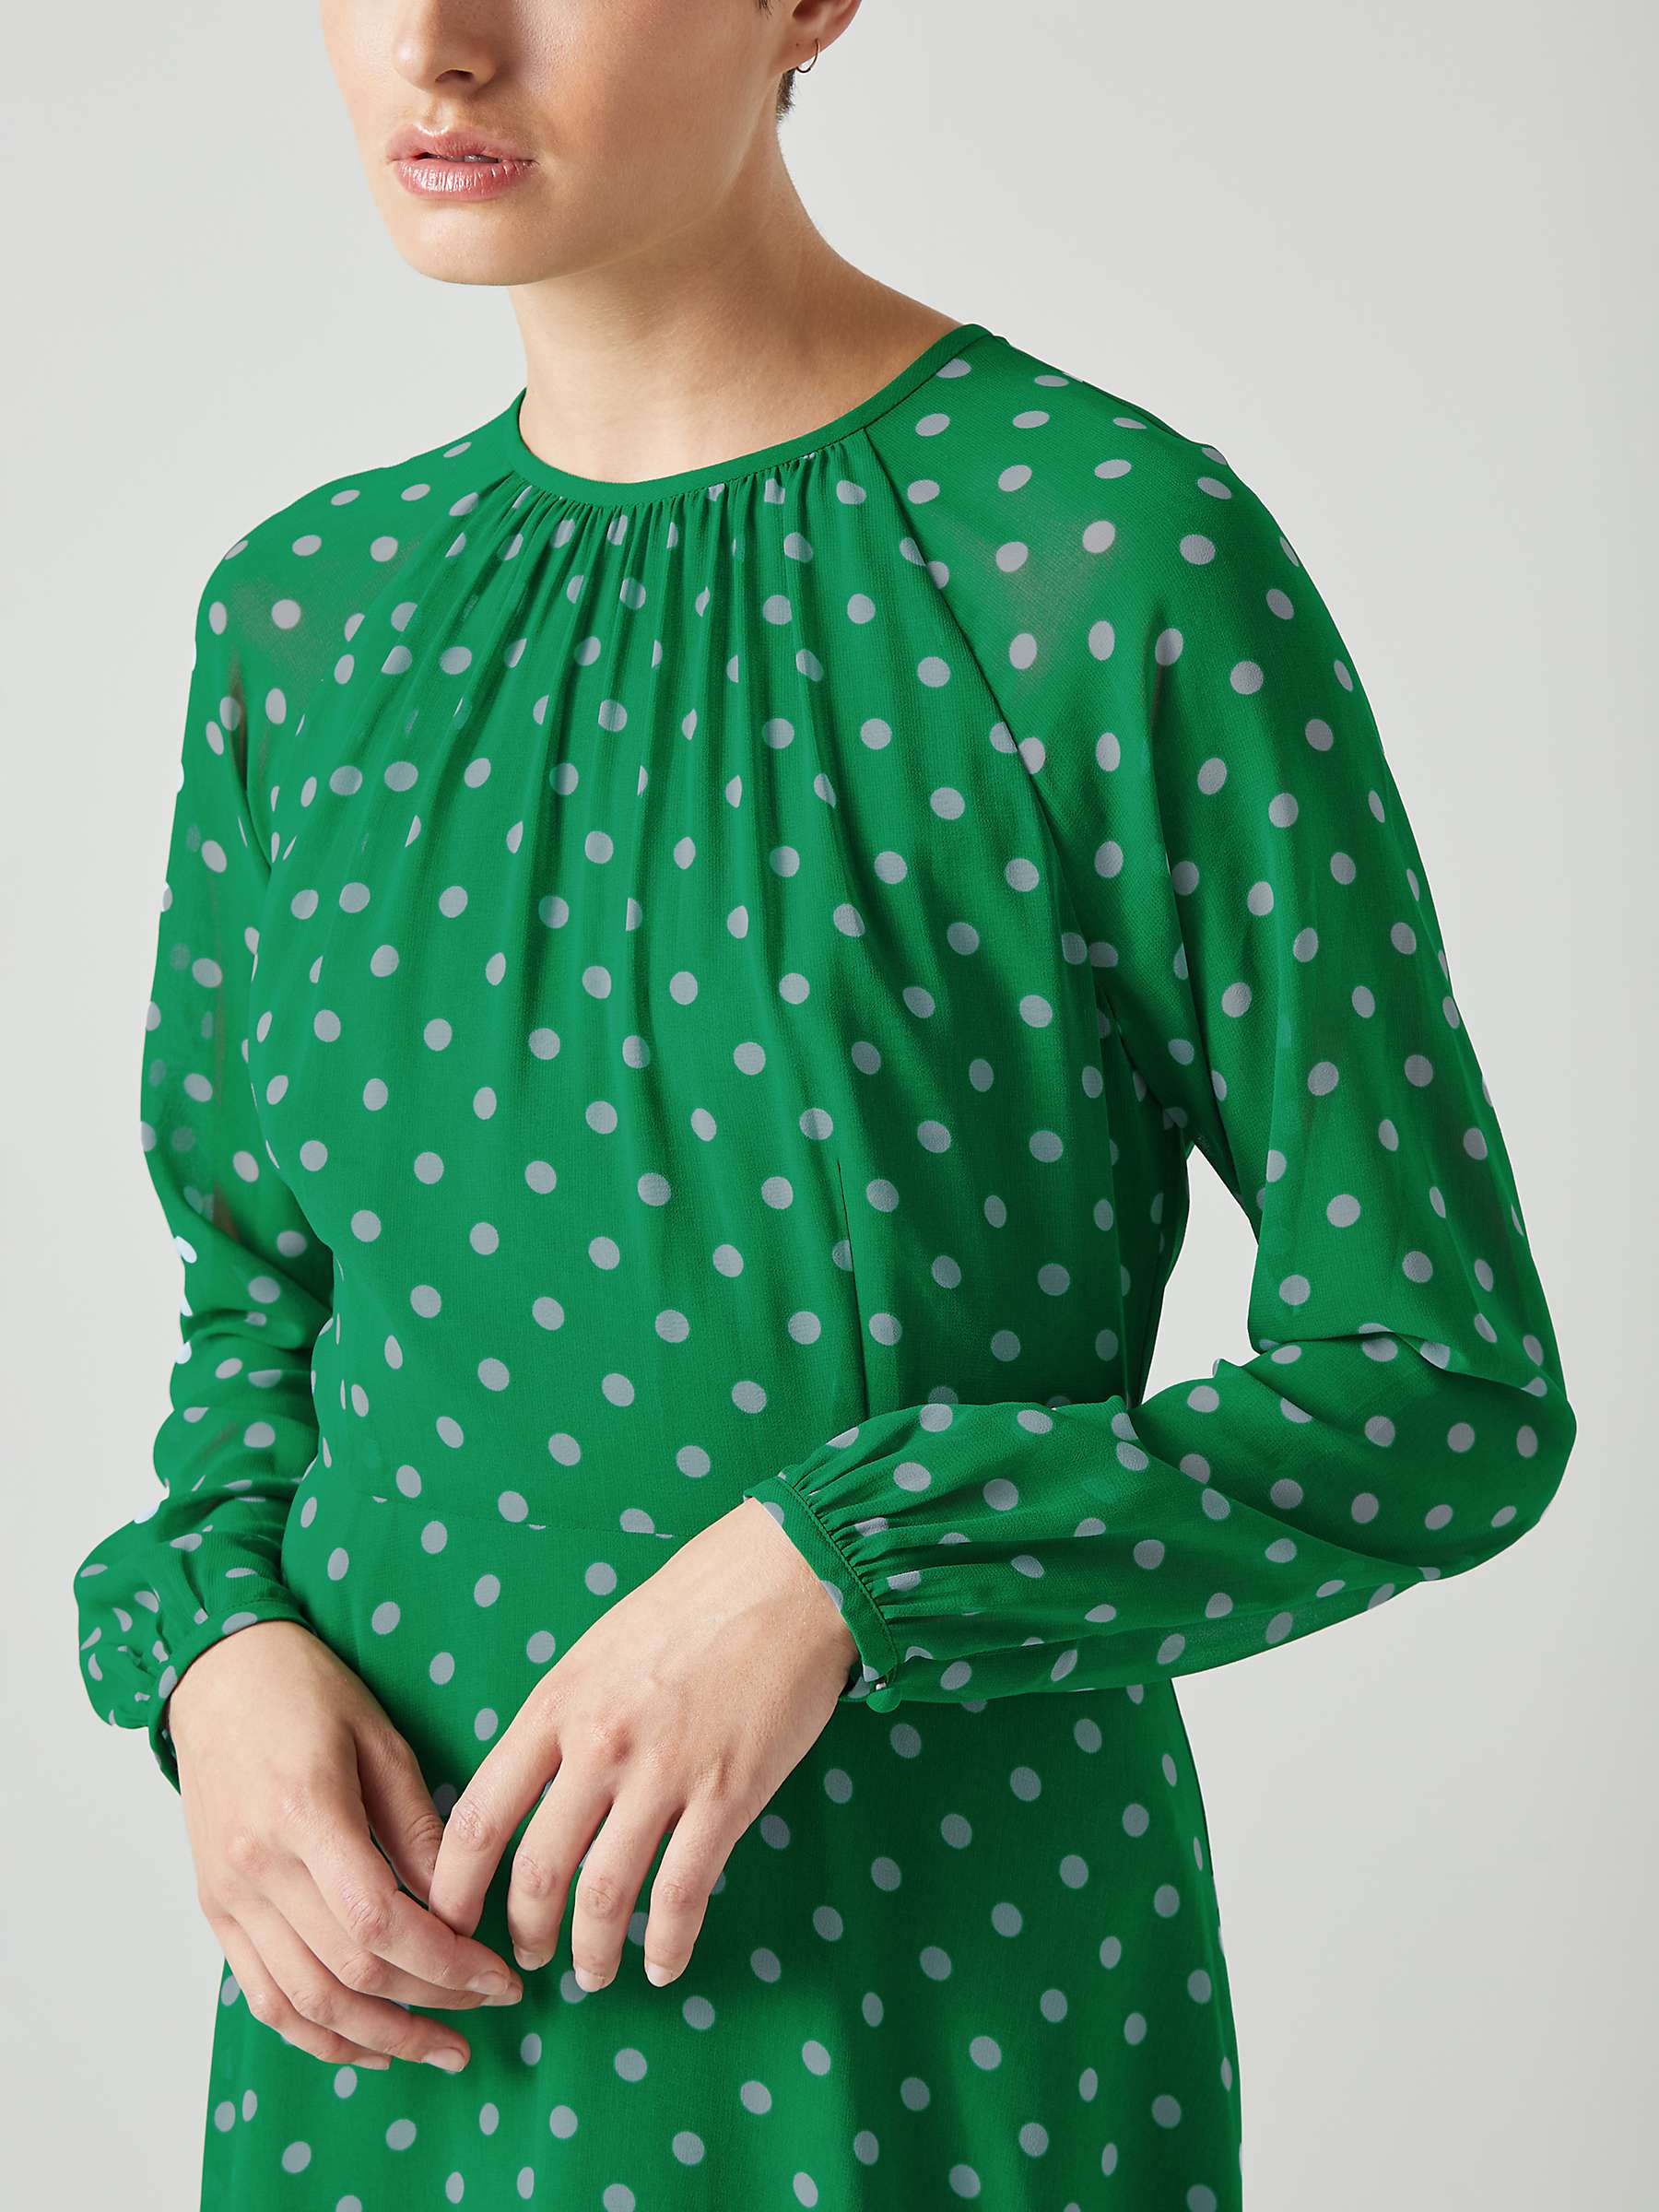 Buy L.K.Bennett Addison Polka Dot Midi Dress, Green/Blue Online at johnlewis.com